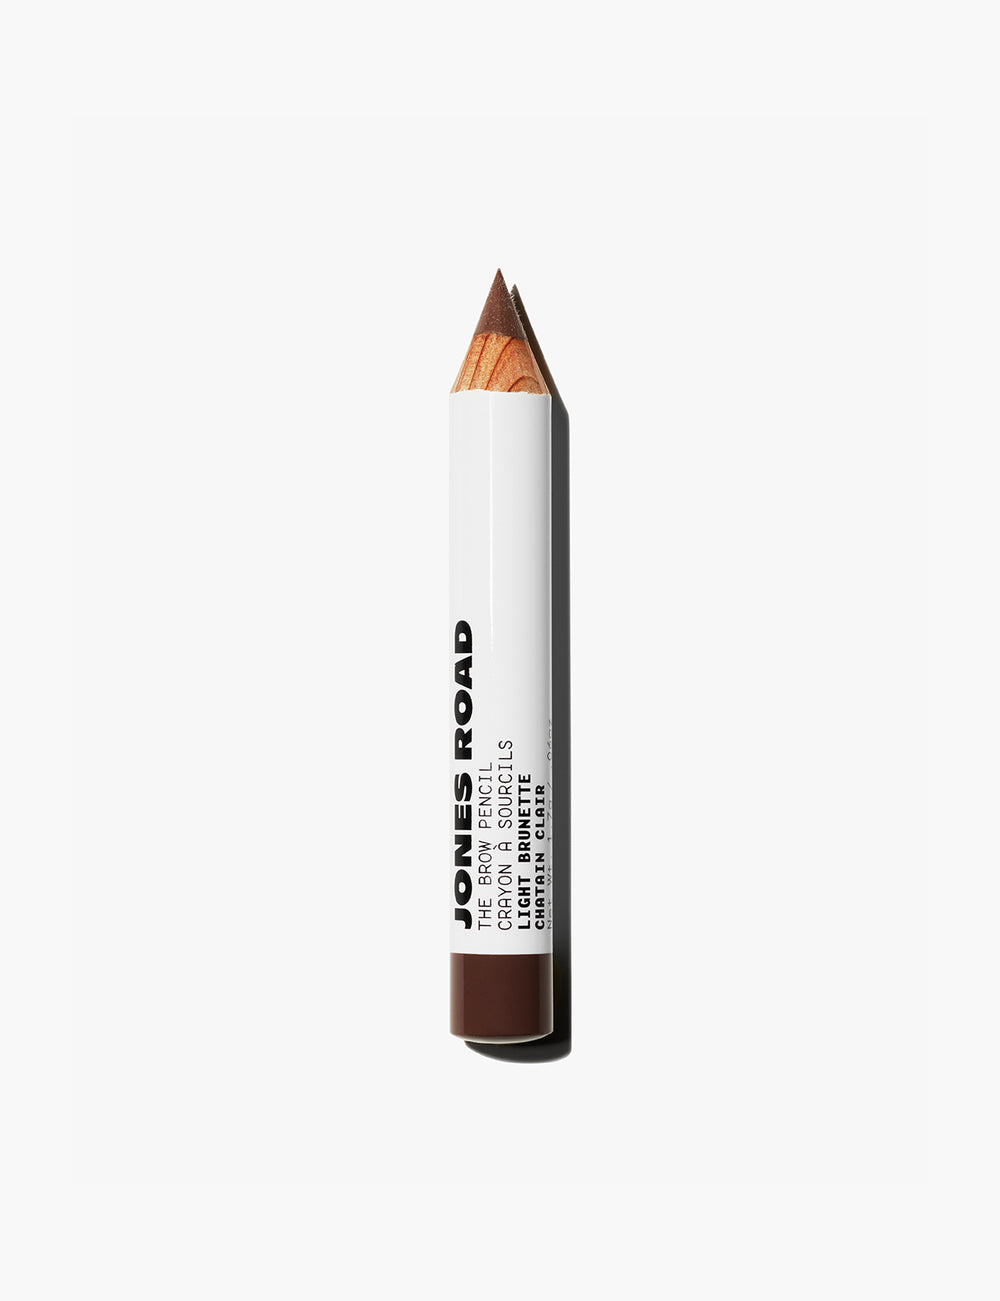 Jones Road clean eyebrow pencil in light brunette